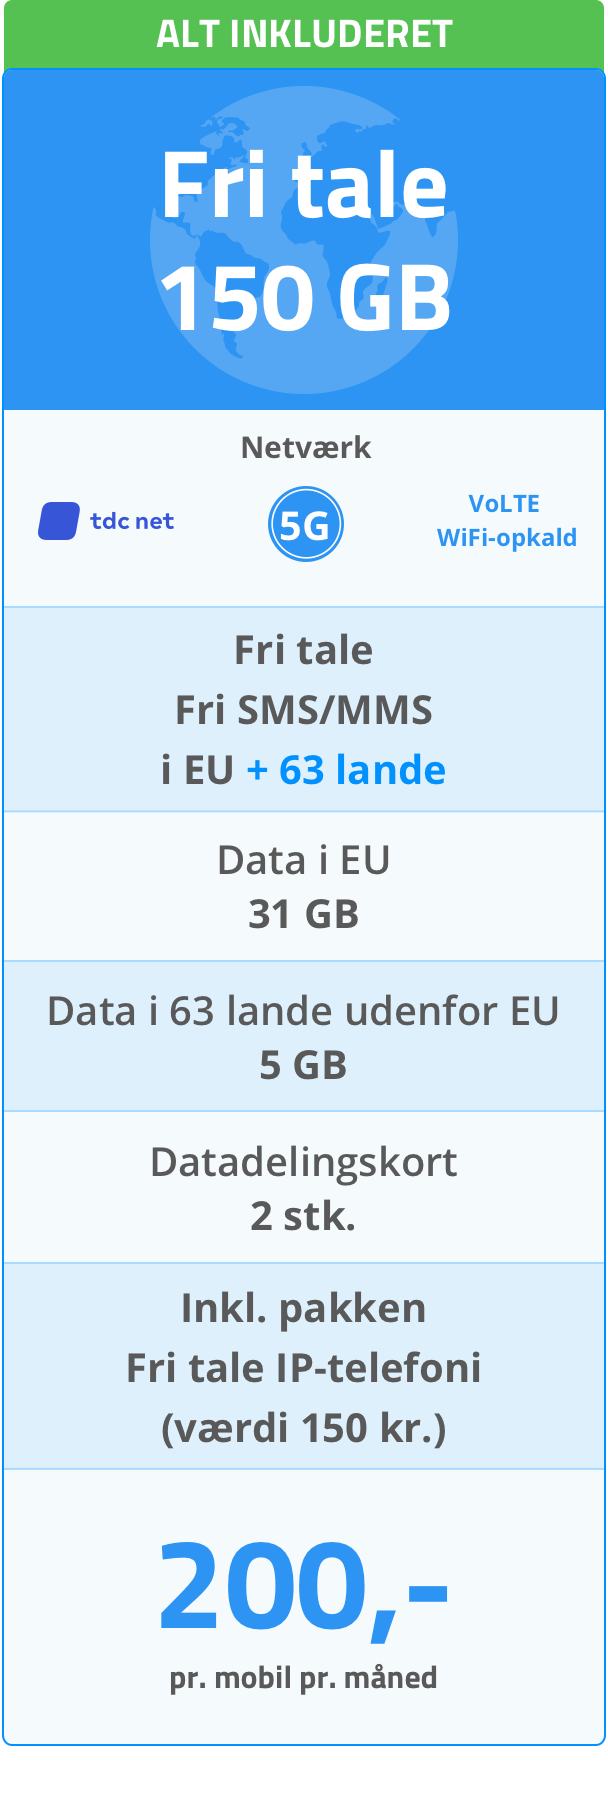 Mobilabonnement (Alt inkluderet): Fri tale 150 GB. 5G netværk. Fri tale/SMS/MMS i EU + 63 lande. Data i EU: 31 GB. Data i 63 lande udenfor EU: 5 GB. Datadelingskort: 2 stk. Fri tale IP-telefoni (værdi 150 kr.). 200 kr. pr. mobil pr. måned.